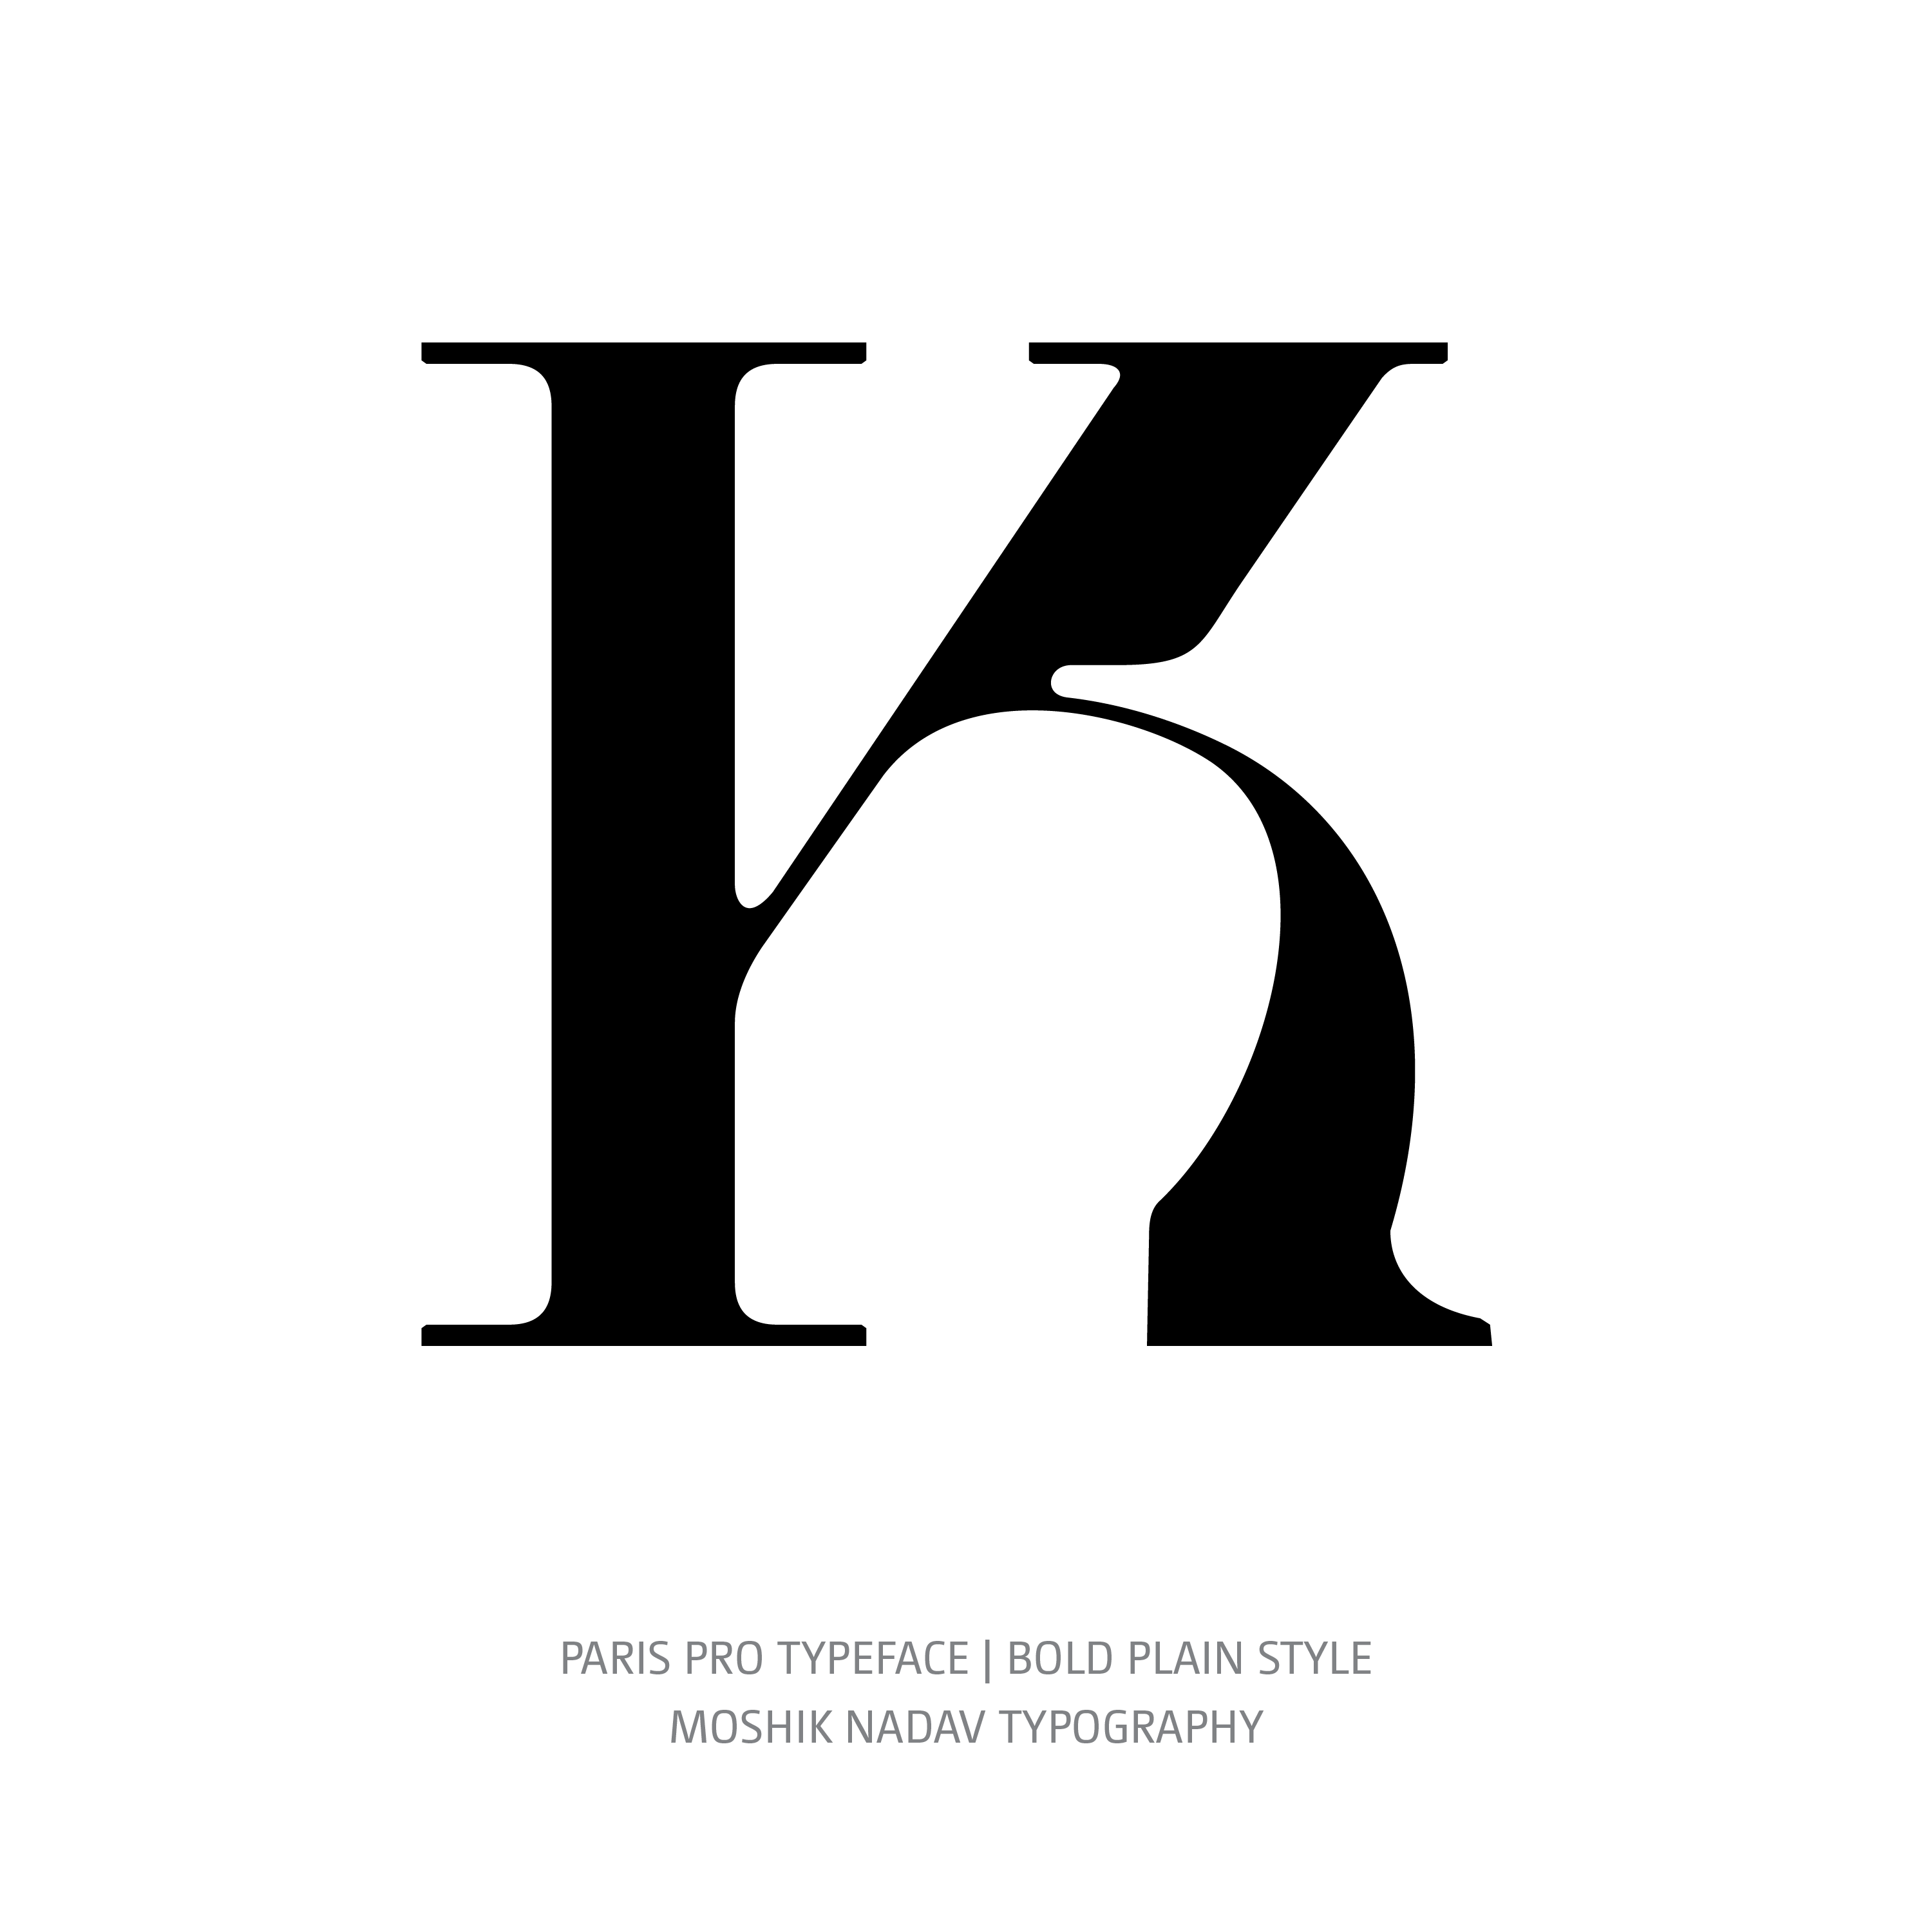 Paris Pro Typeface Bold Plain K